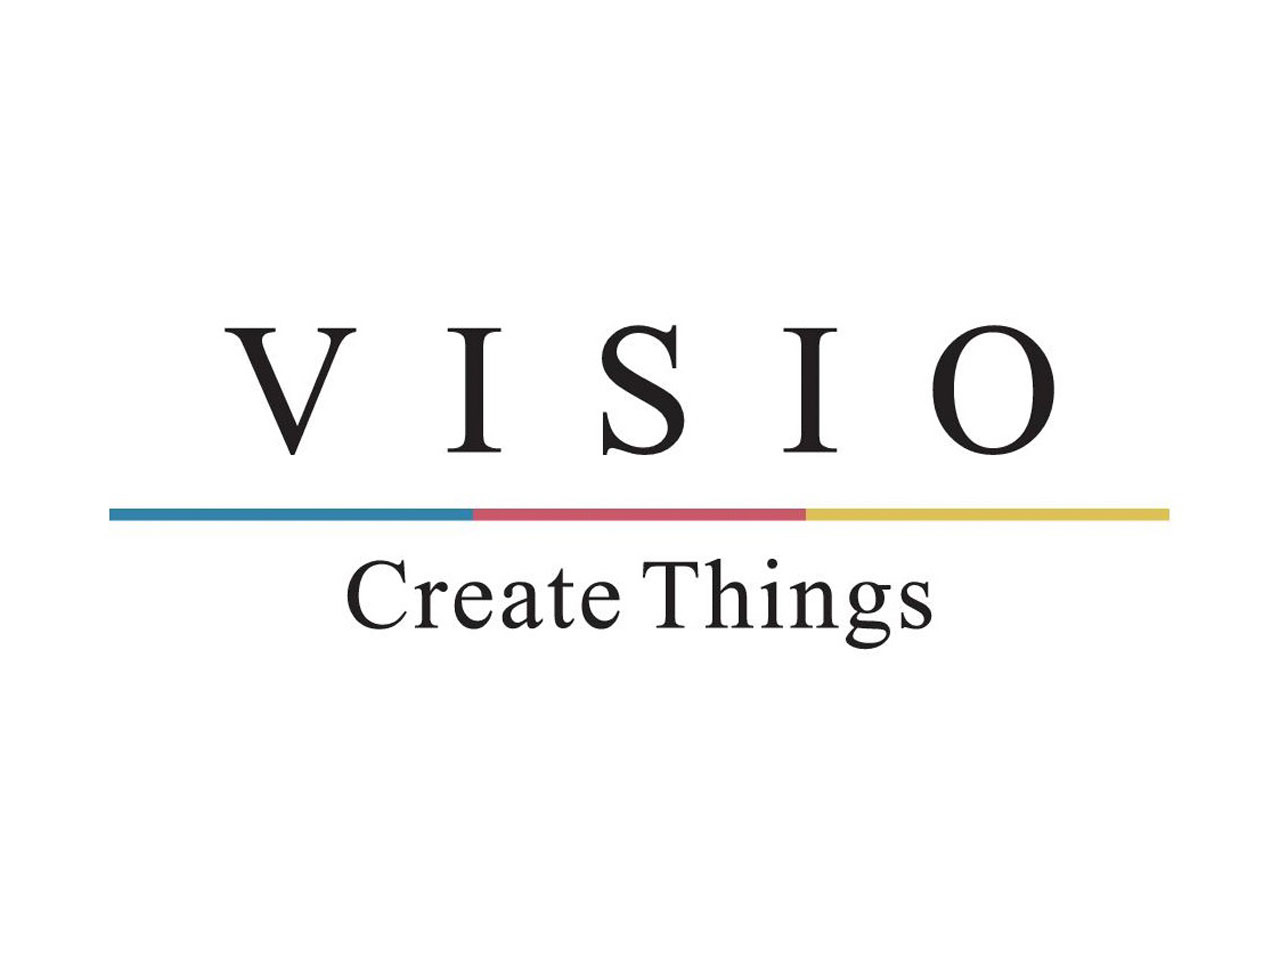 2022年4月に37期目に入った不動産会社であるVISIOグループの中で、自社の建物の設計を担当しているのが同社。その他に、VISIOグループの広報部門も担っている。